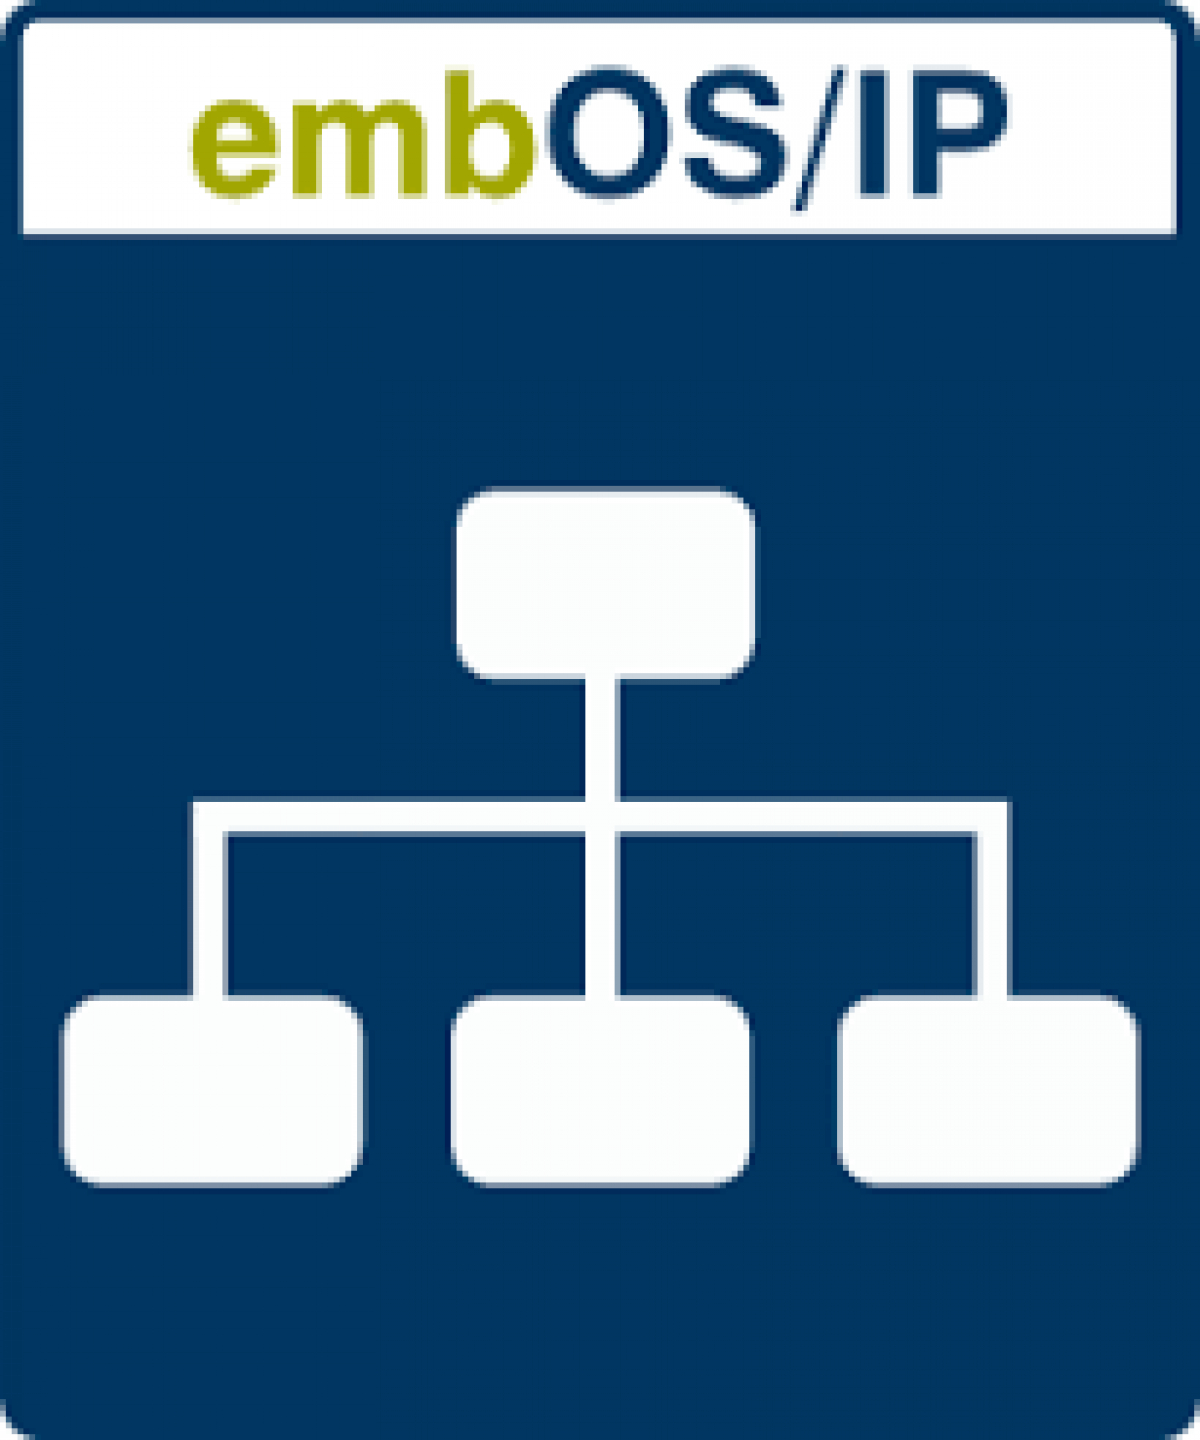 embOS / IP WebSocket IoT（Internet of Things）プロトコル